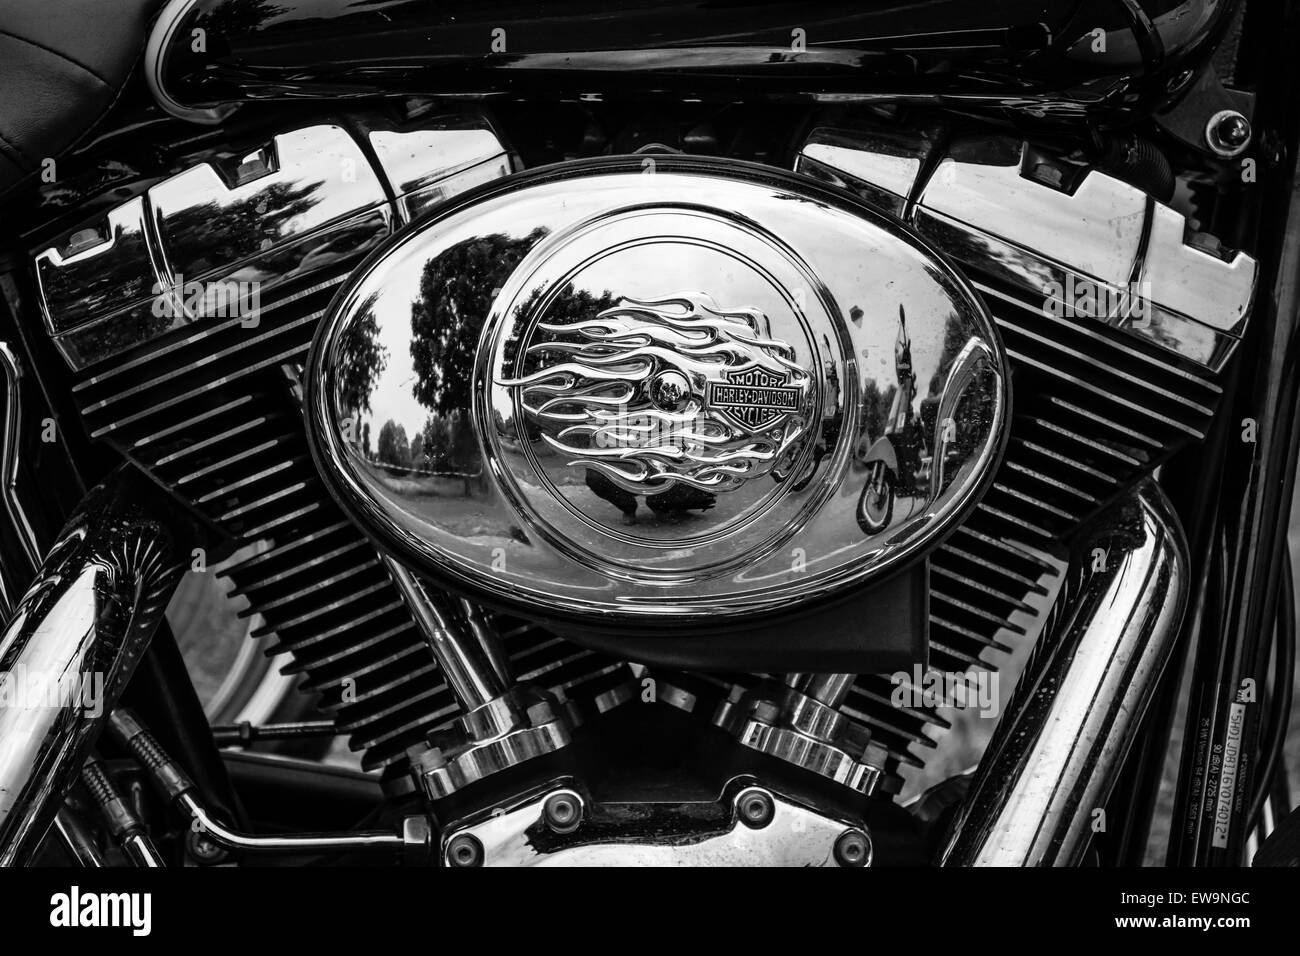 PAAREN IM GLIEN, ALLEMAGNE - le 23 mai 2015 : Fragment d'une moto Harley-Davidson. Noir et blanc. L'oldtimer show à MAFZ. Banque D'Images